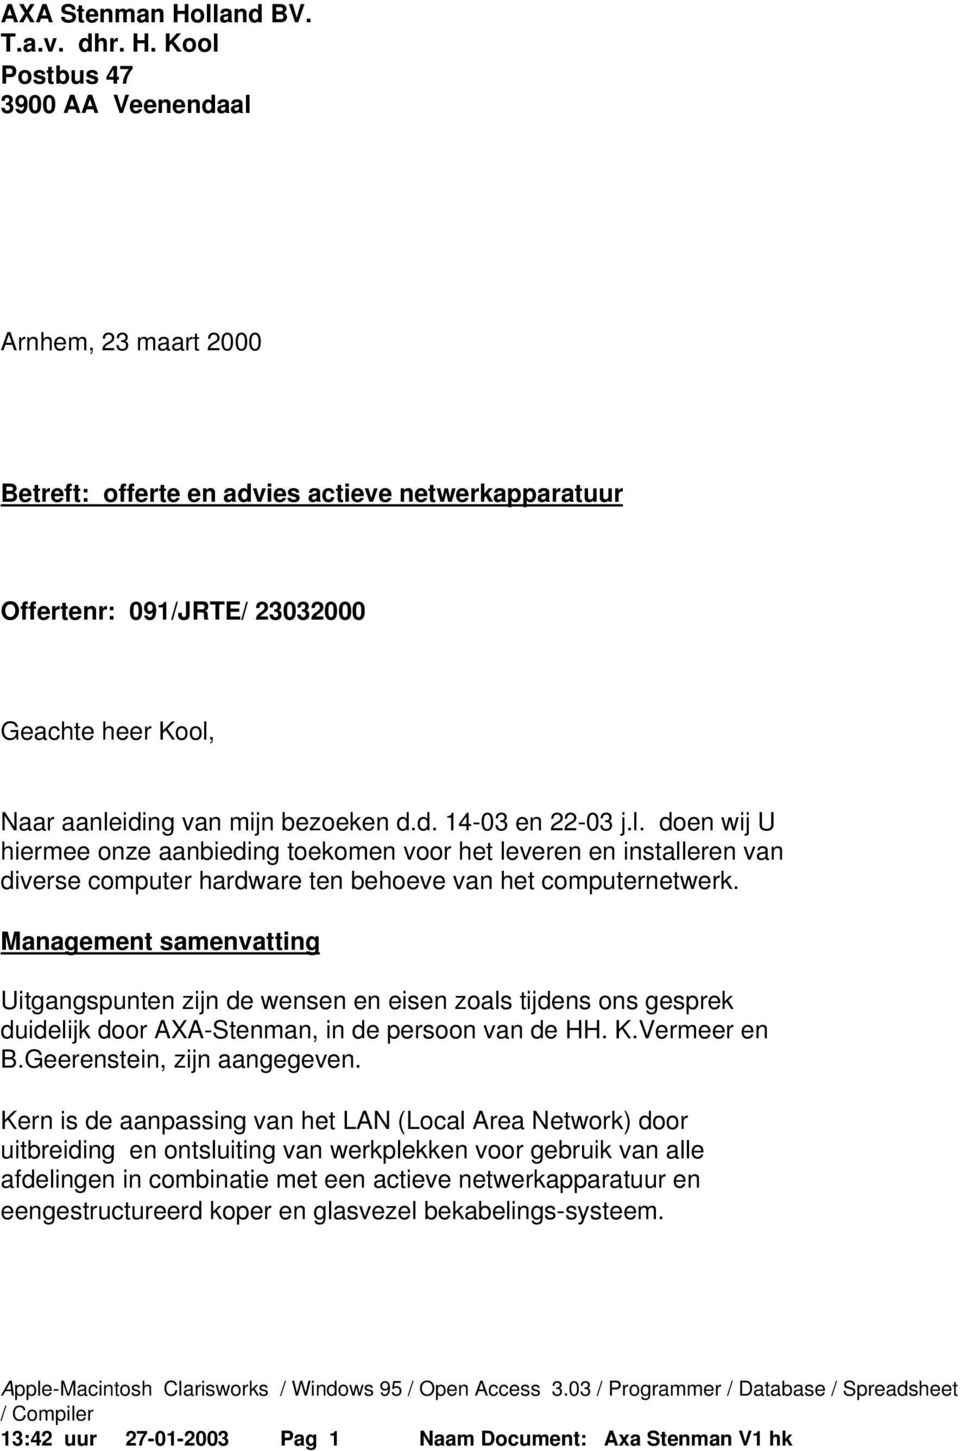 Kool Postbus 47 3900 AA Veenendaal Arnhem, 23 maart 2000 Betreft: offerte en advies actieve netwerkapparatuur Offertenr: 091/JRTE/ 23032000 Geachte heer Kool, Naar aanleiding van mijn bezoeken d.d. 14-03 en 22-03 j.